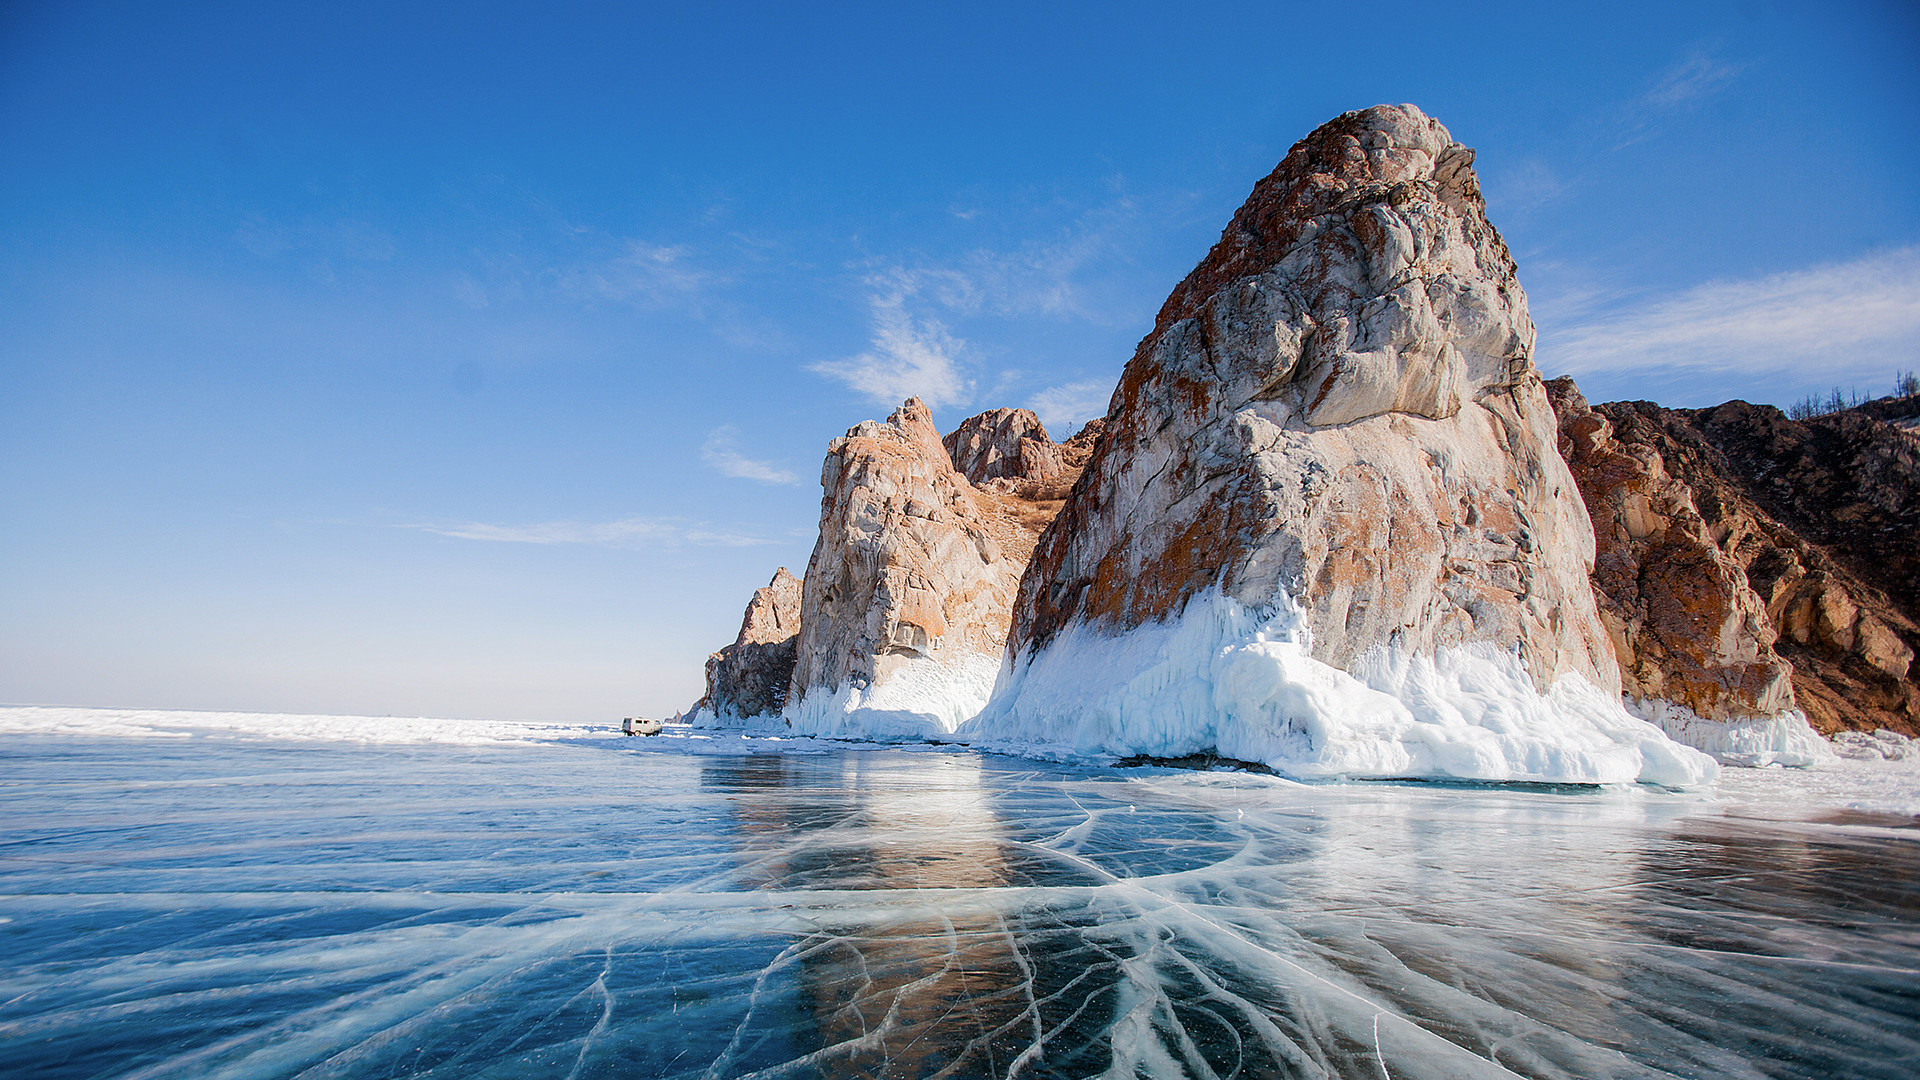 Самые красивые льды - на Байкале, согласны?